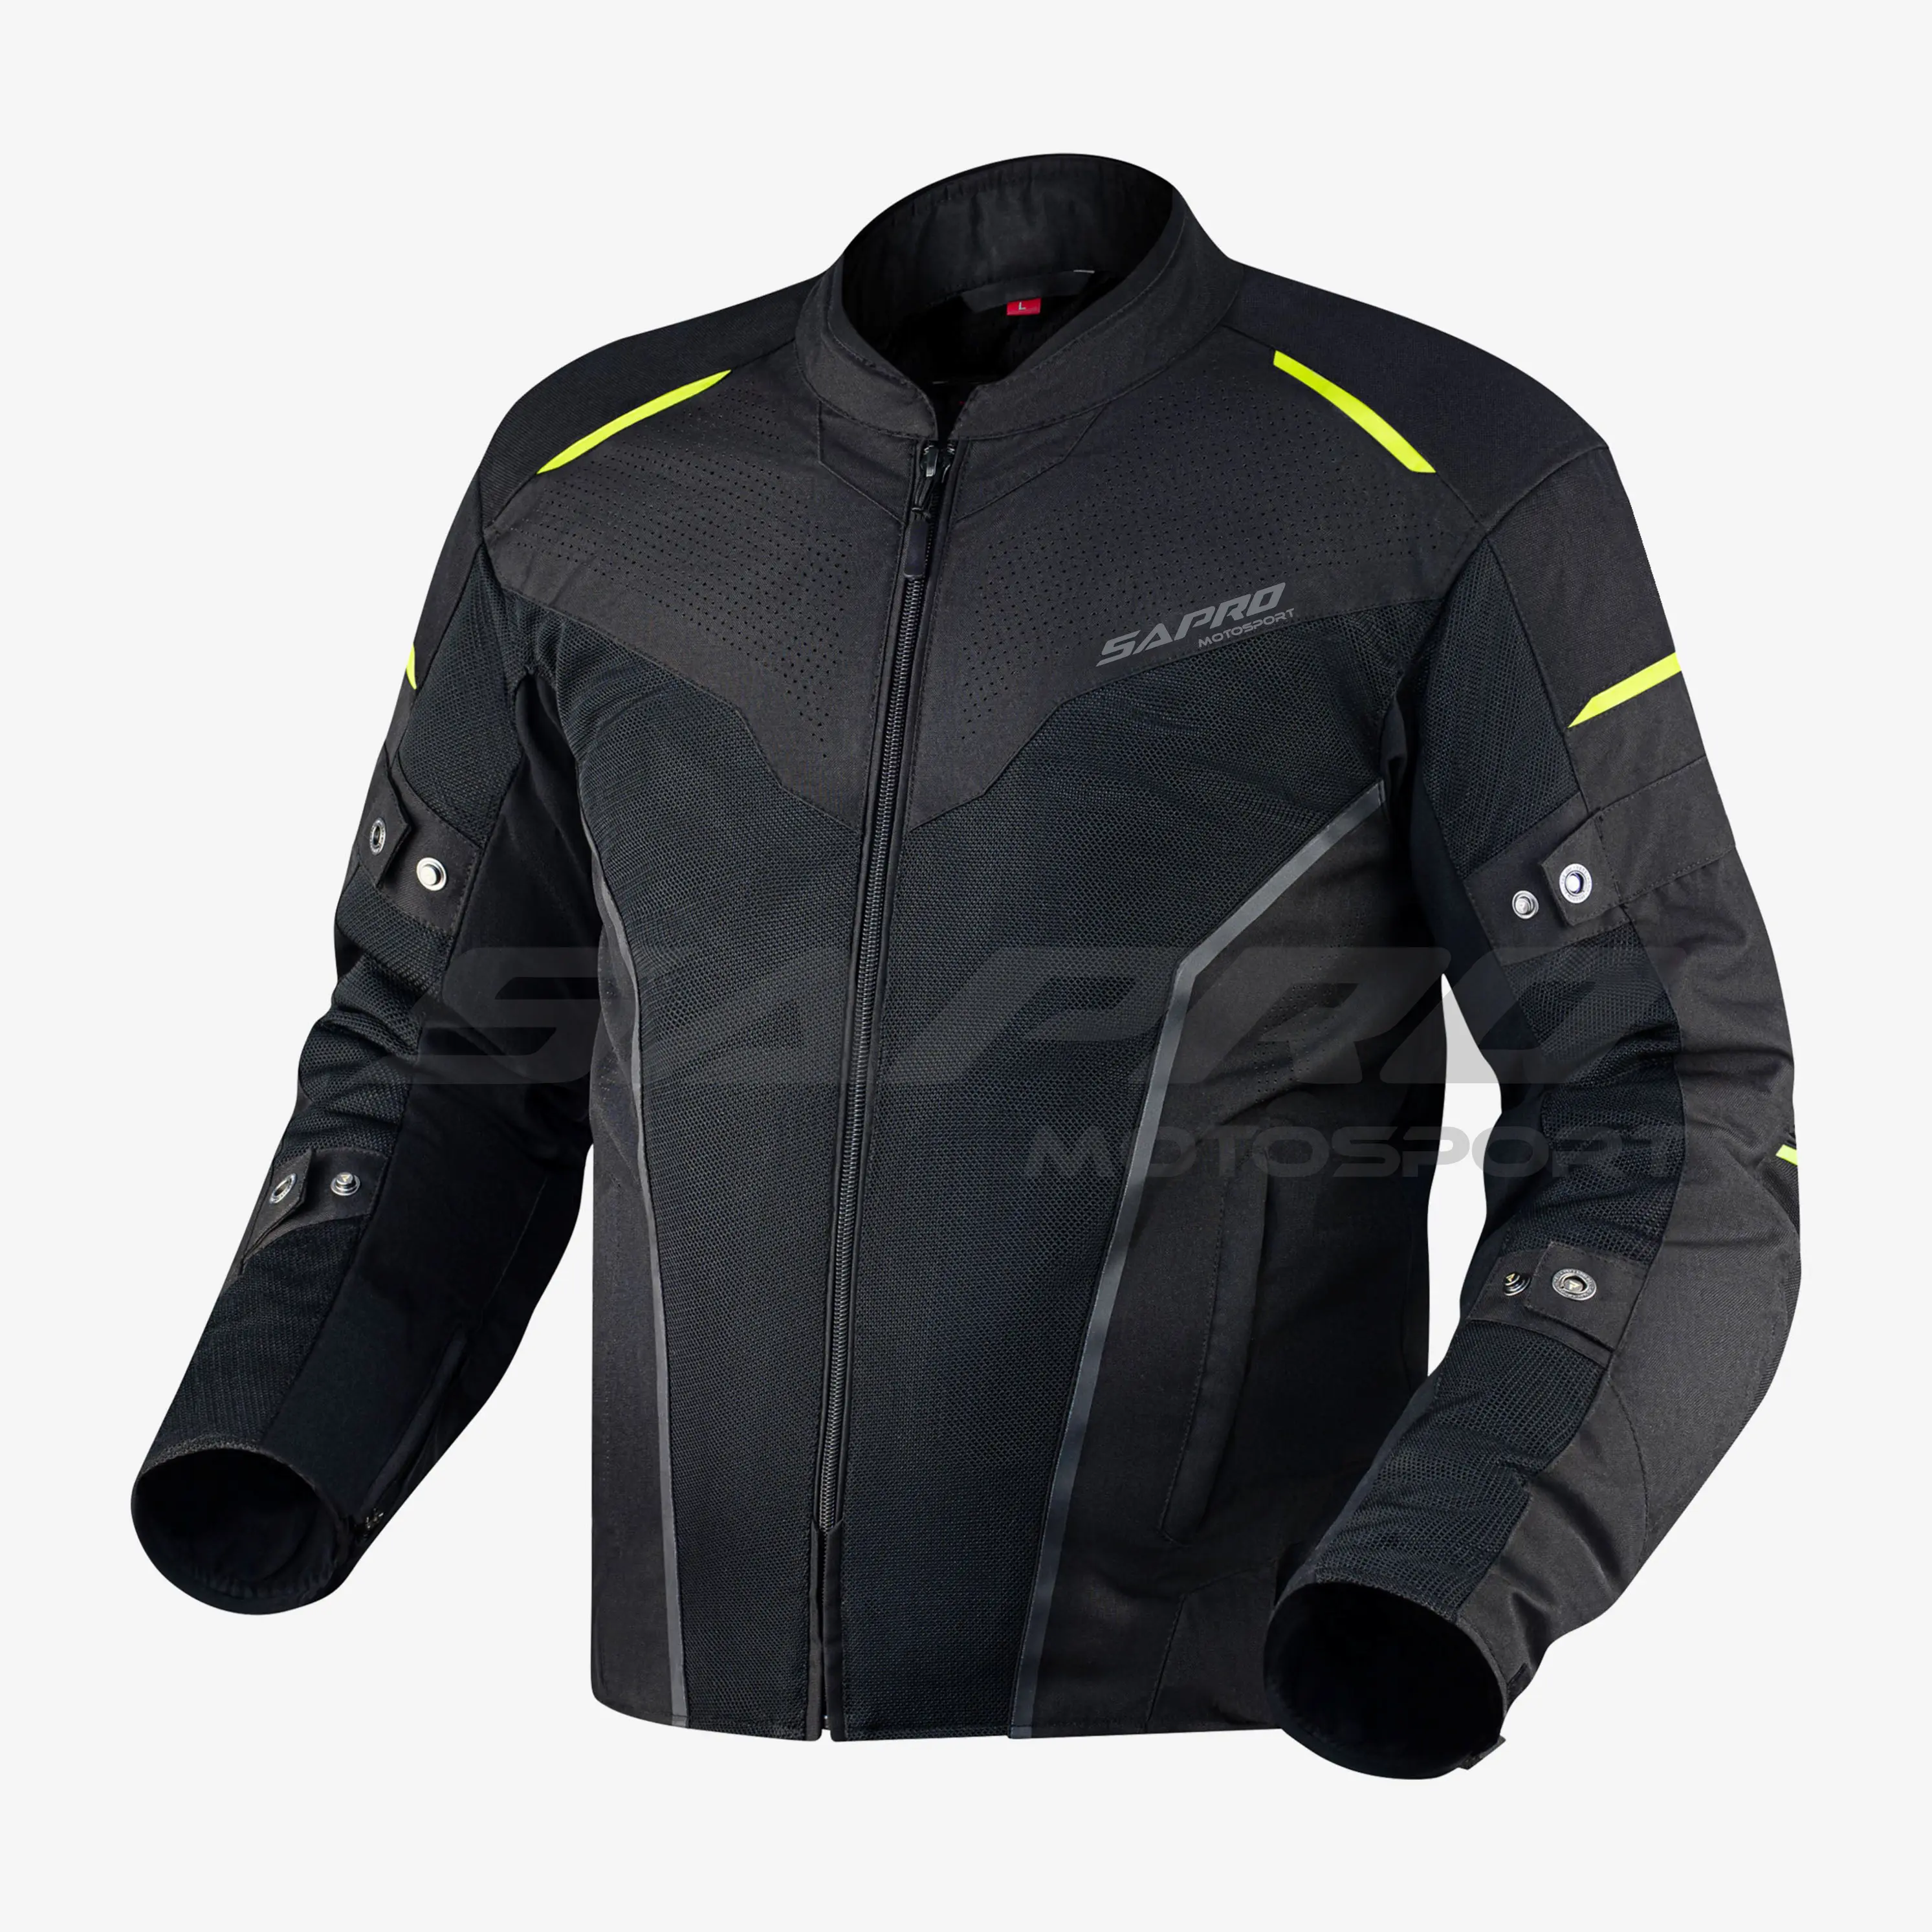 Marka yeni tekstil Cordura motosiklet örgü koruyucu ceketler erkekler için yaz Cordura motosiklet ceketi yarış ceketi sokak giyim